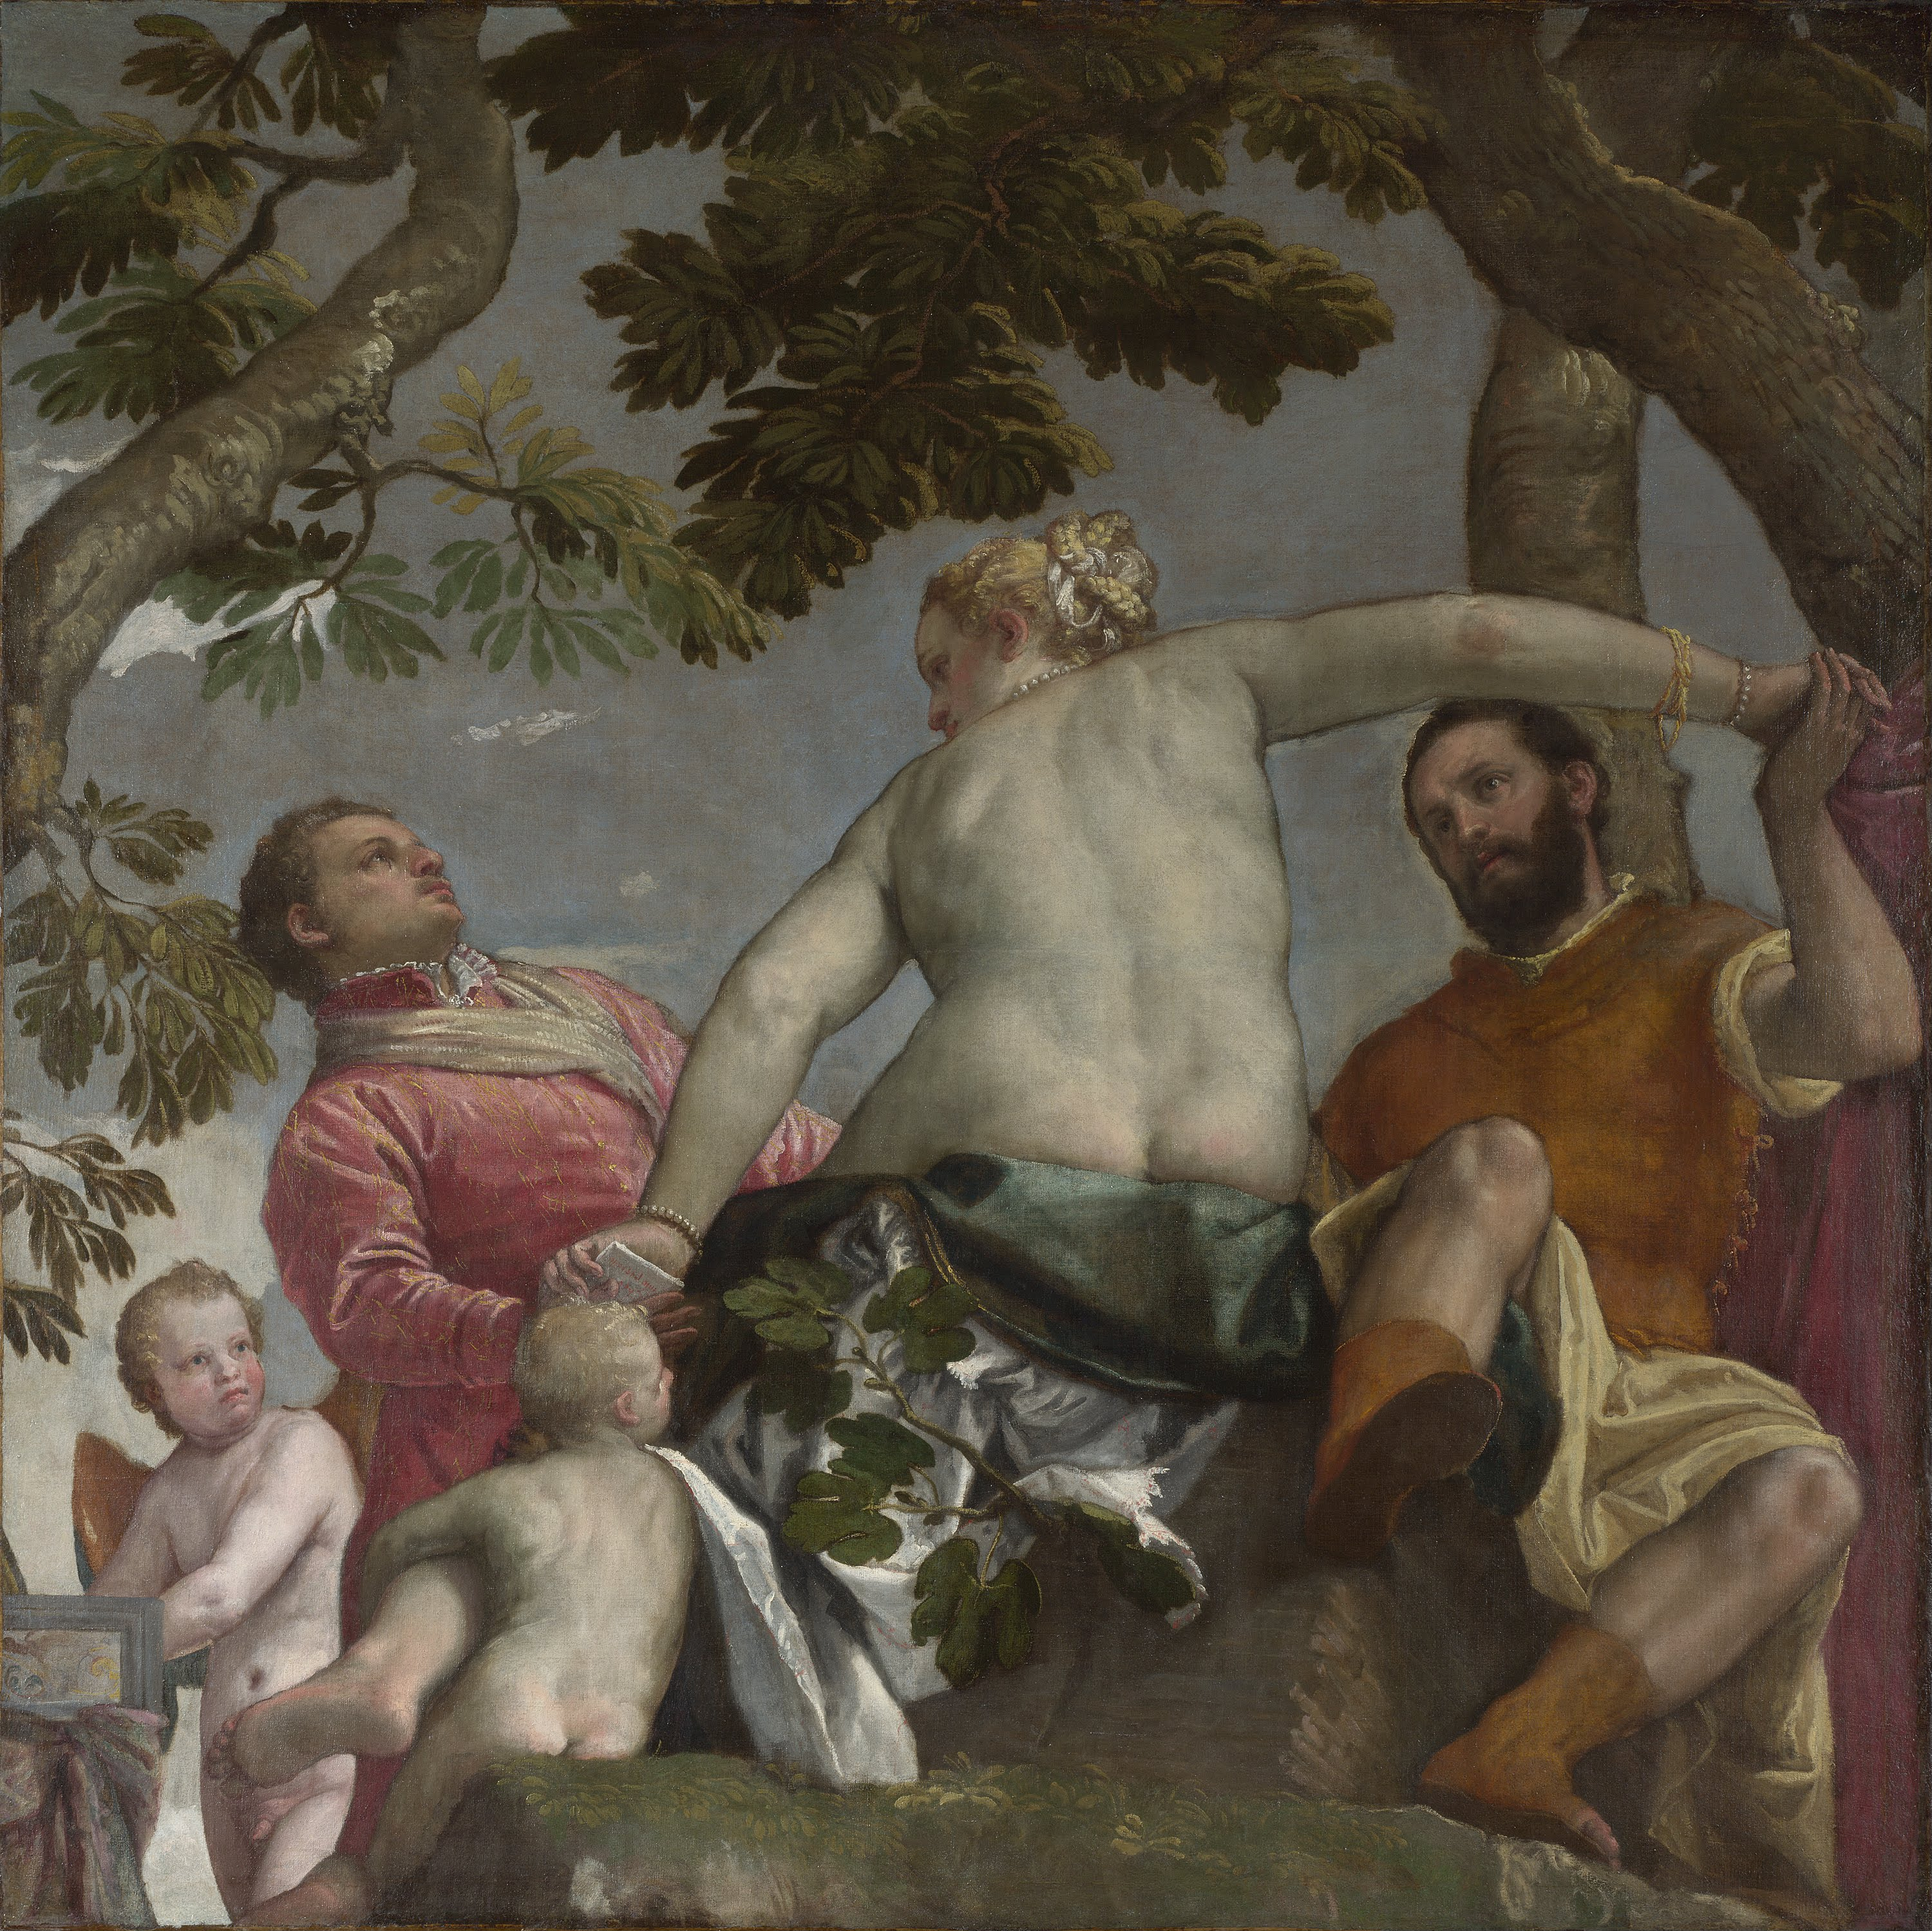 La infidelidad by Paolo Veronese - 1575 Galería Nacional